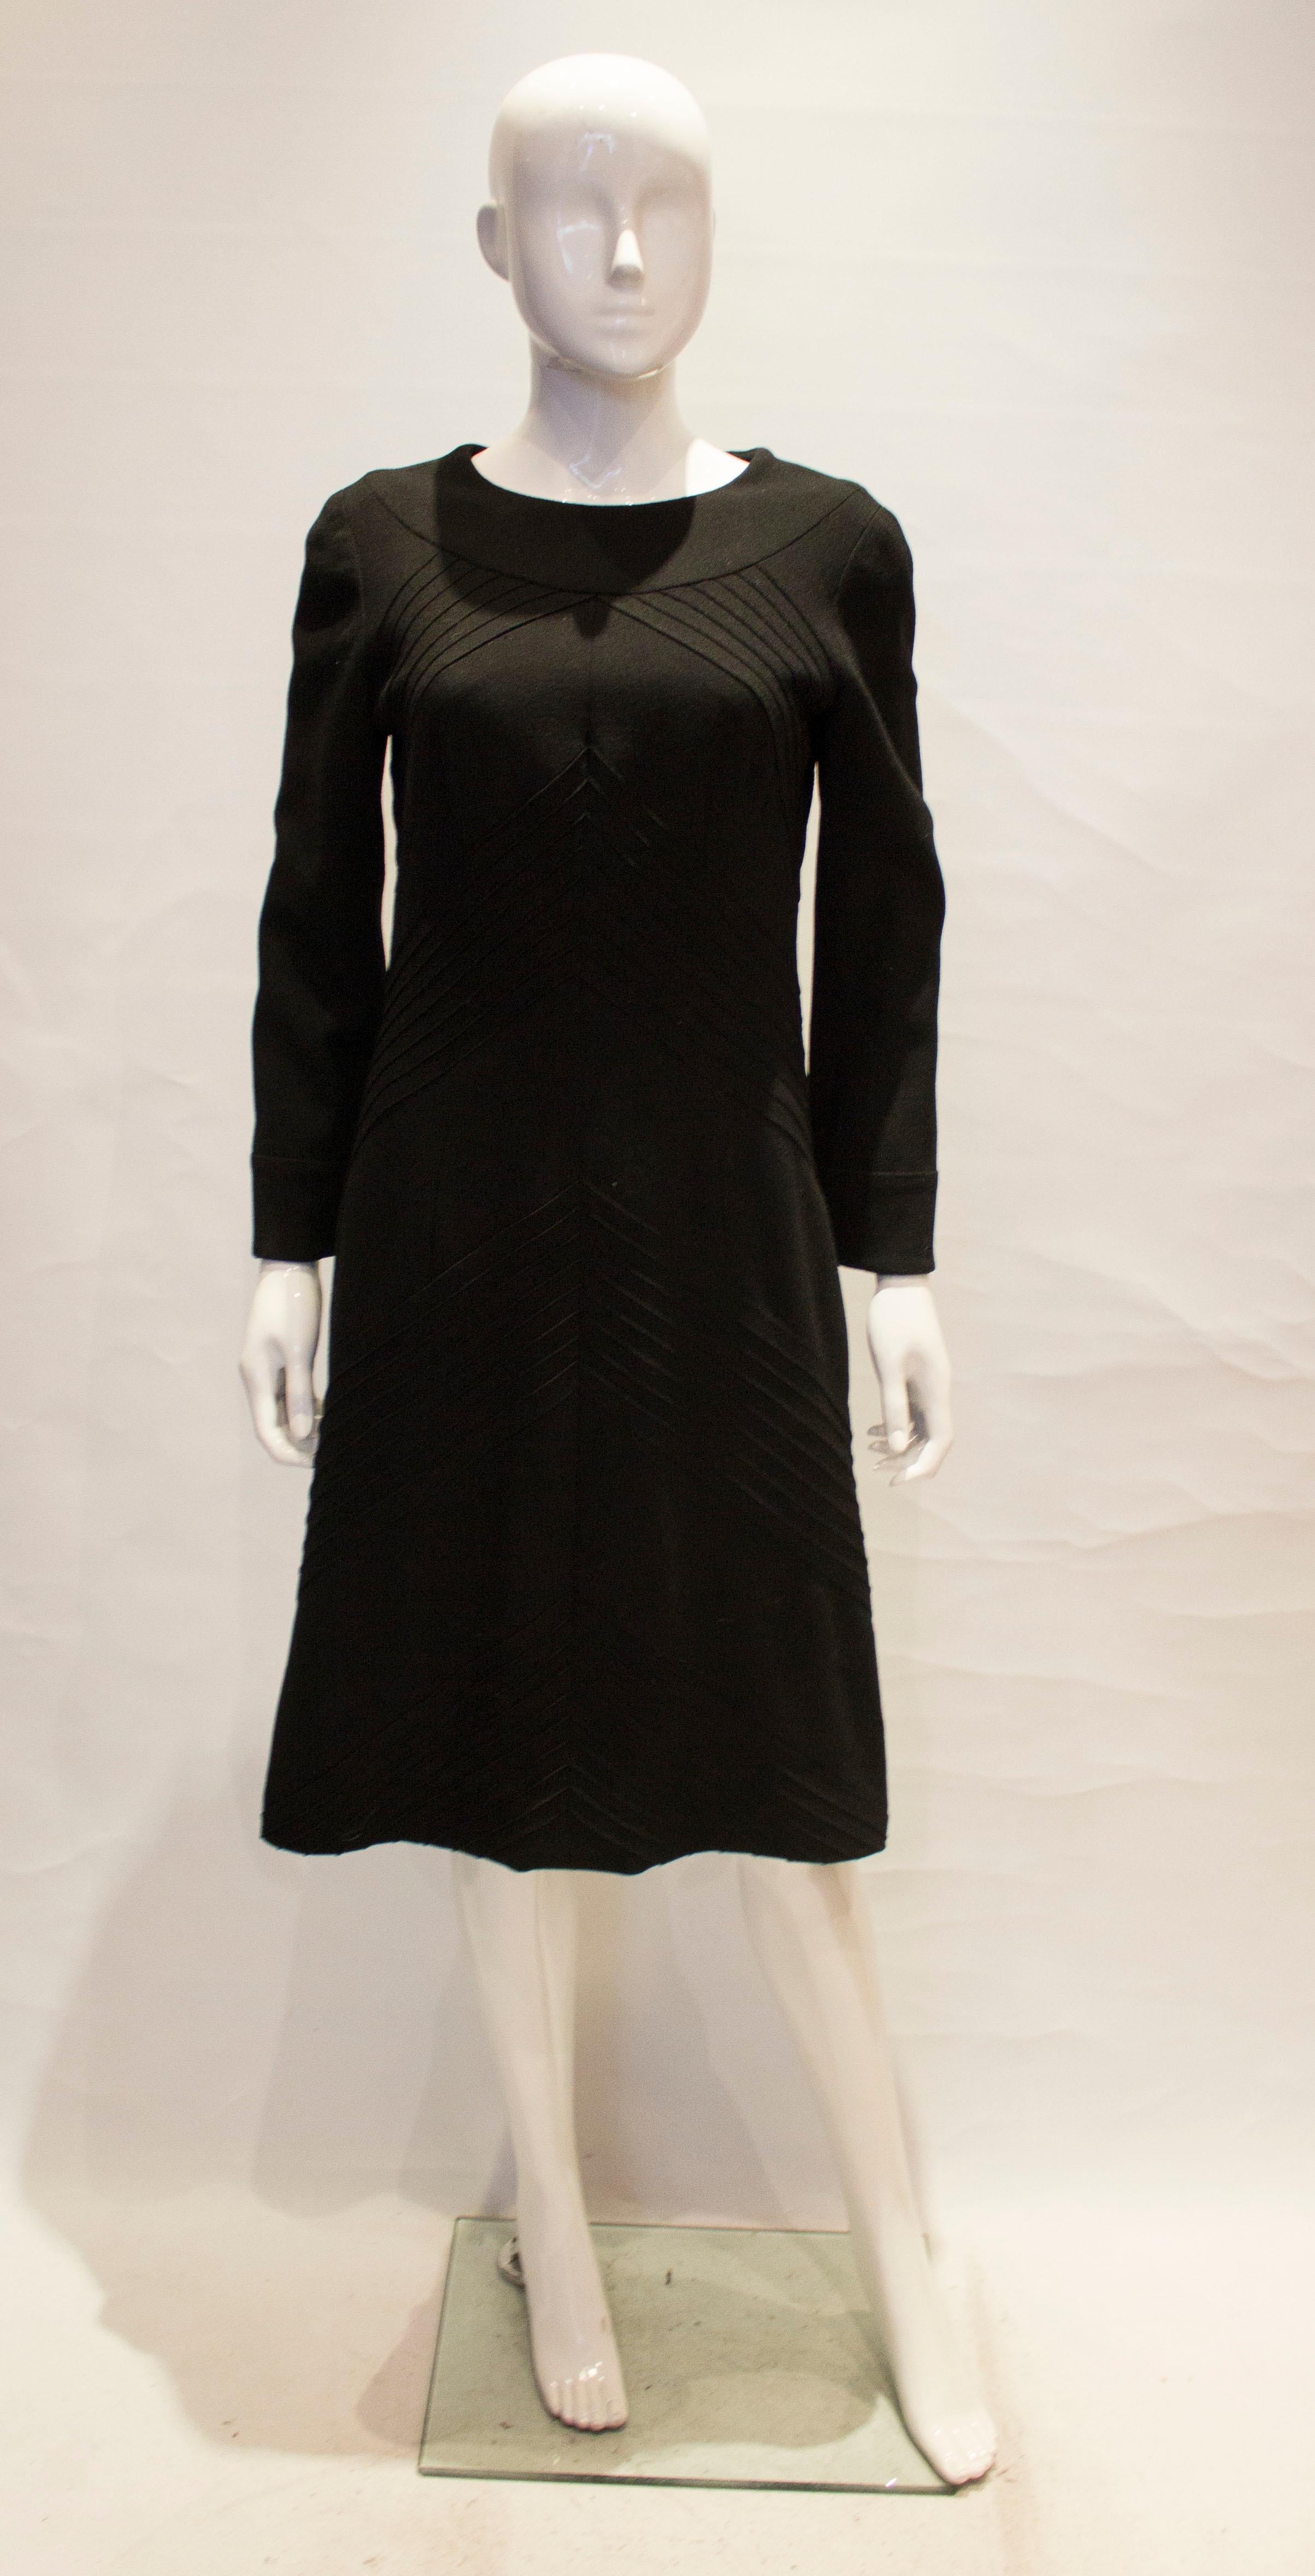 Ein klassisches kleines schwarzes Kleid von Hartnell. Das Kleid ist aus schwarzer Wolle, hat einen Rundhalsausschnitt und ist vorne und hinten mit Nähten versehen. Sie ist vollständig gefüttert und hat einen zentralen Reißverschluss am Rücken.